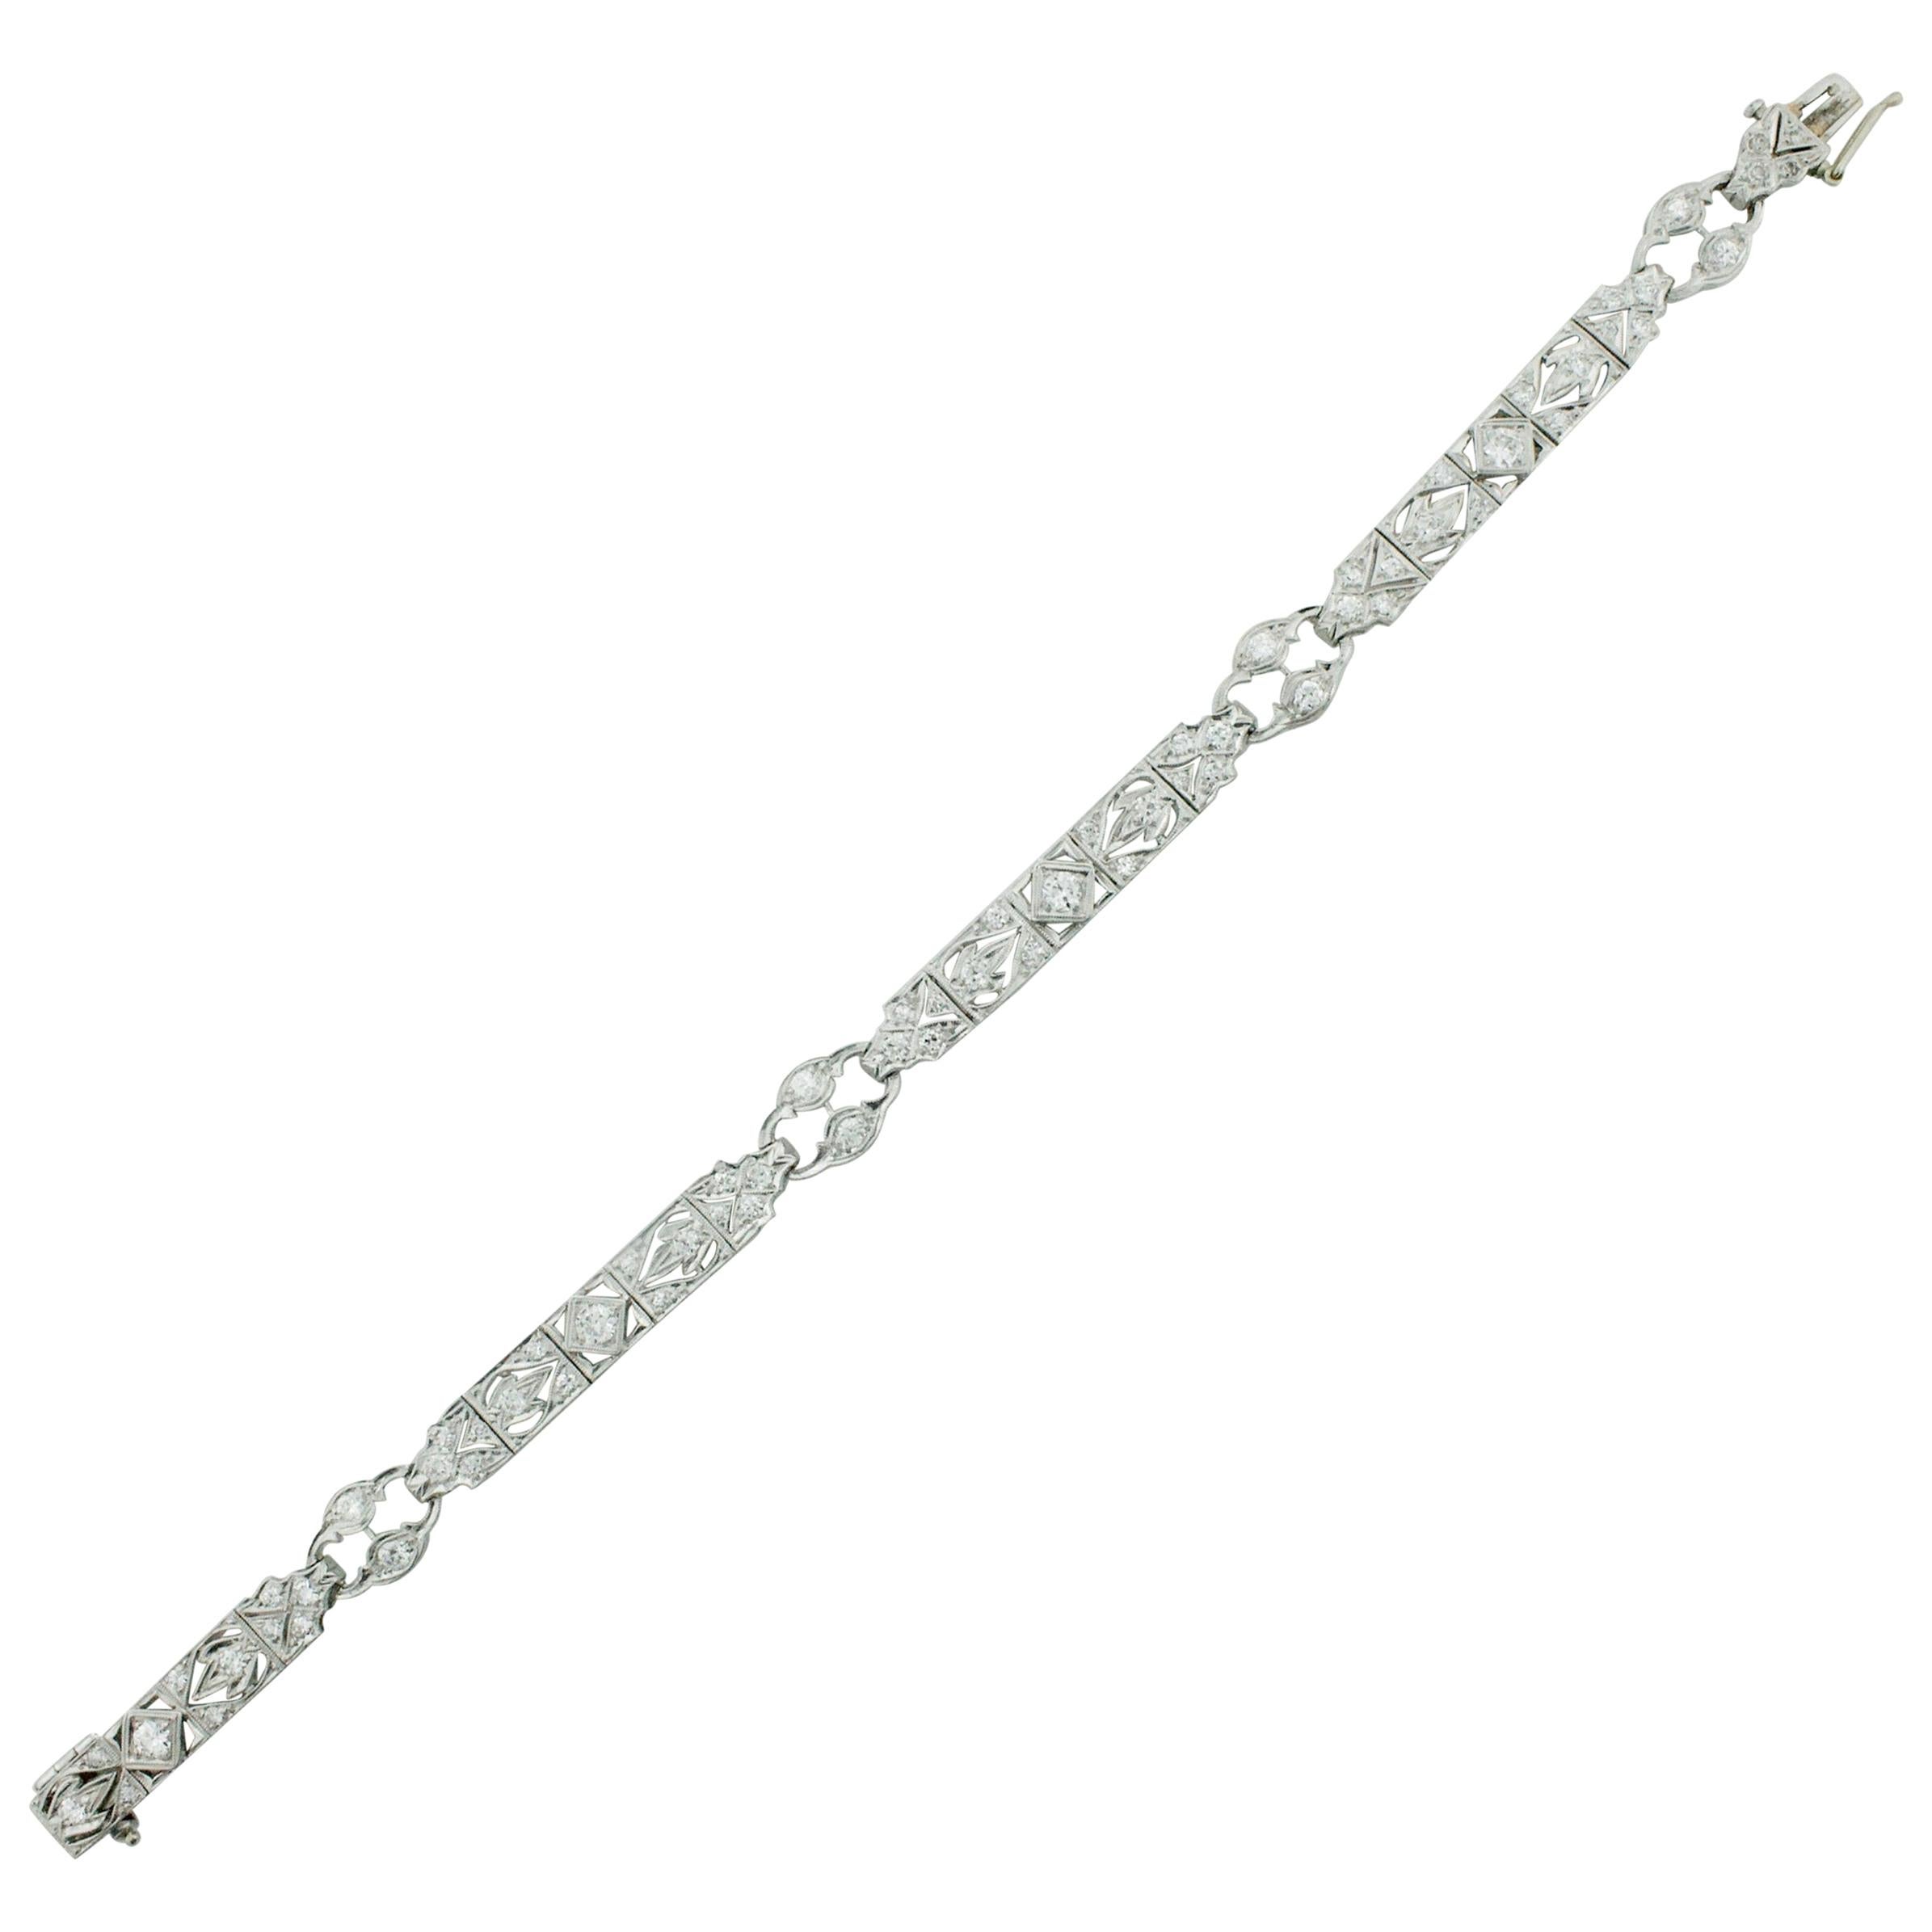 Tiffany & Co. Diamond Bracelet in Platinum, circa 1930s